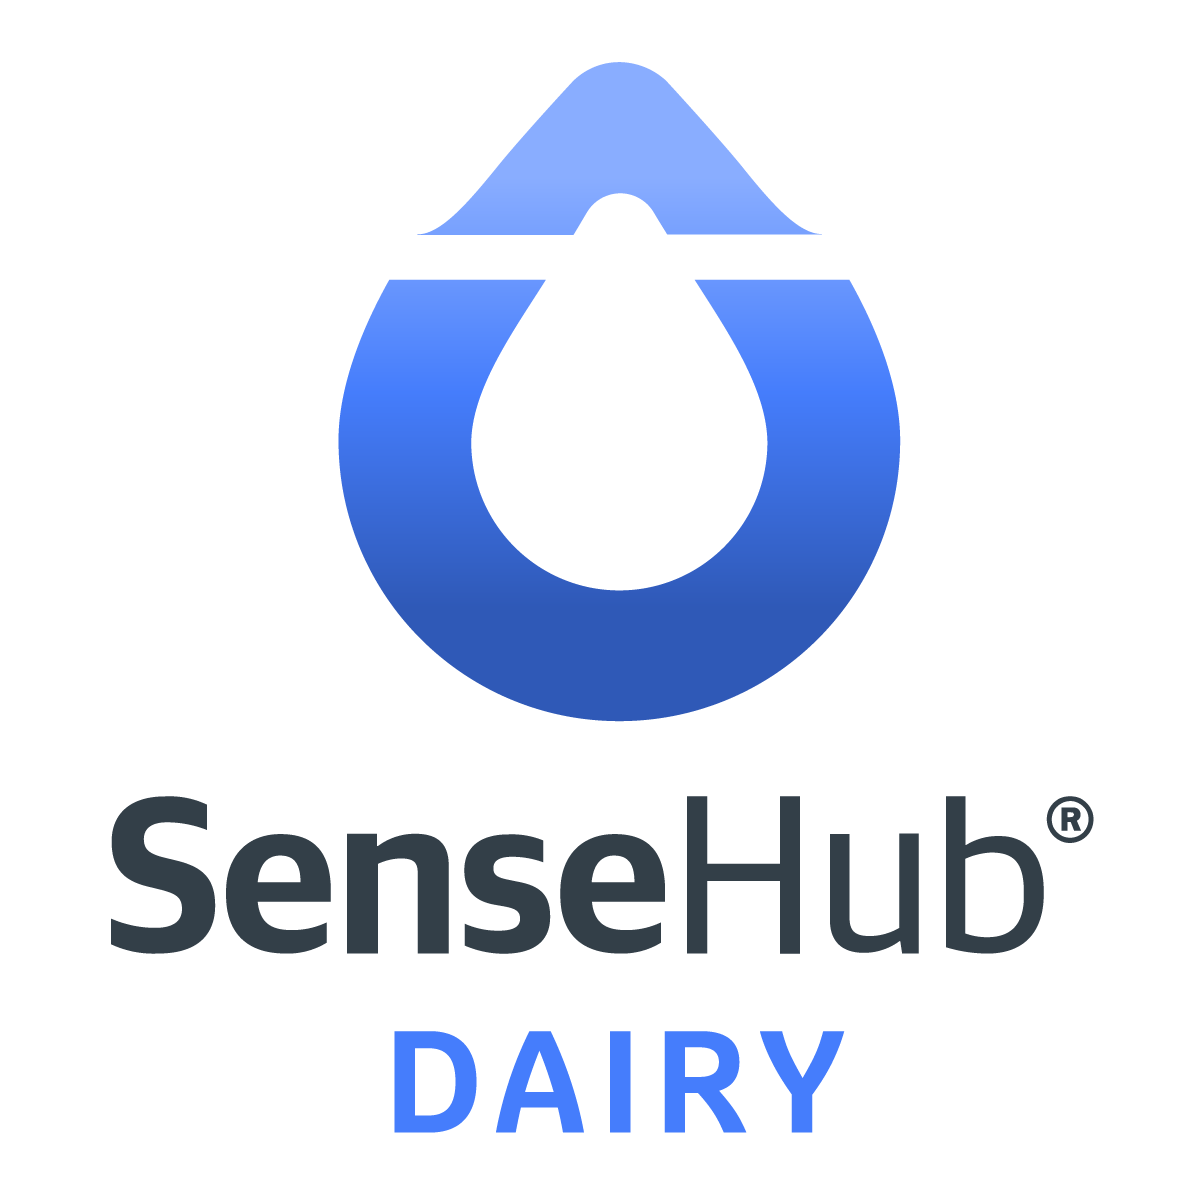 SenseHub Dairy logo